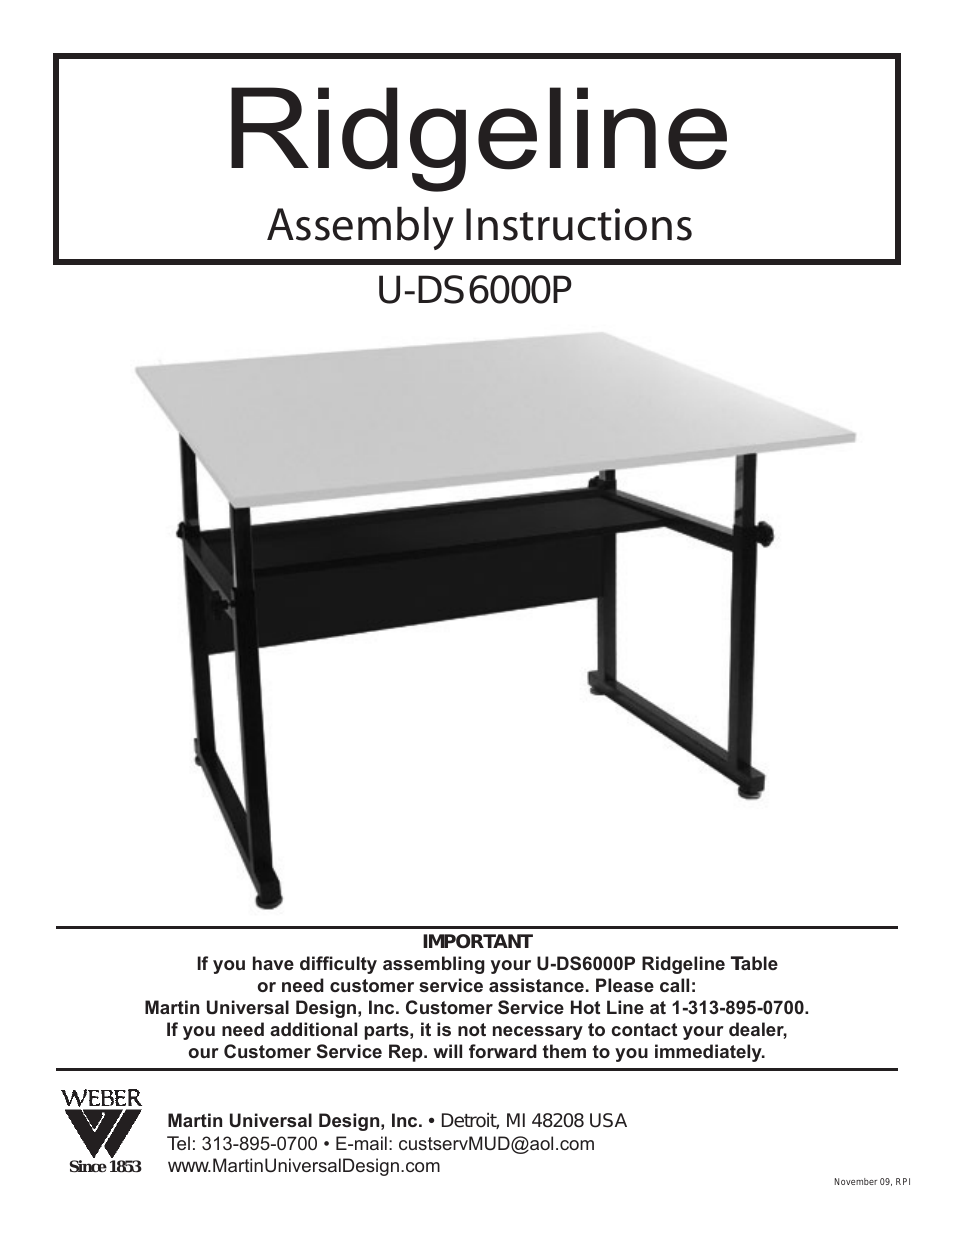 U-DS6000P Ridgeline Table